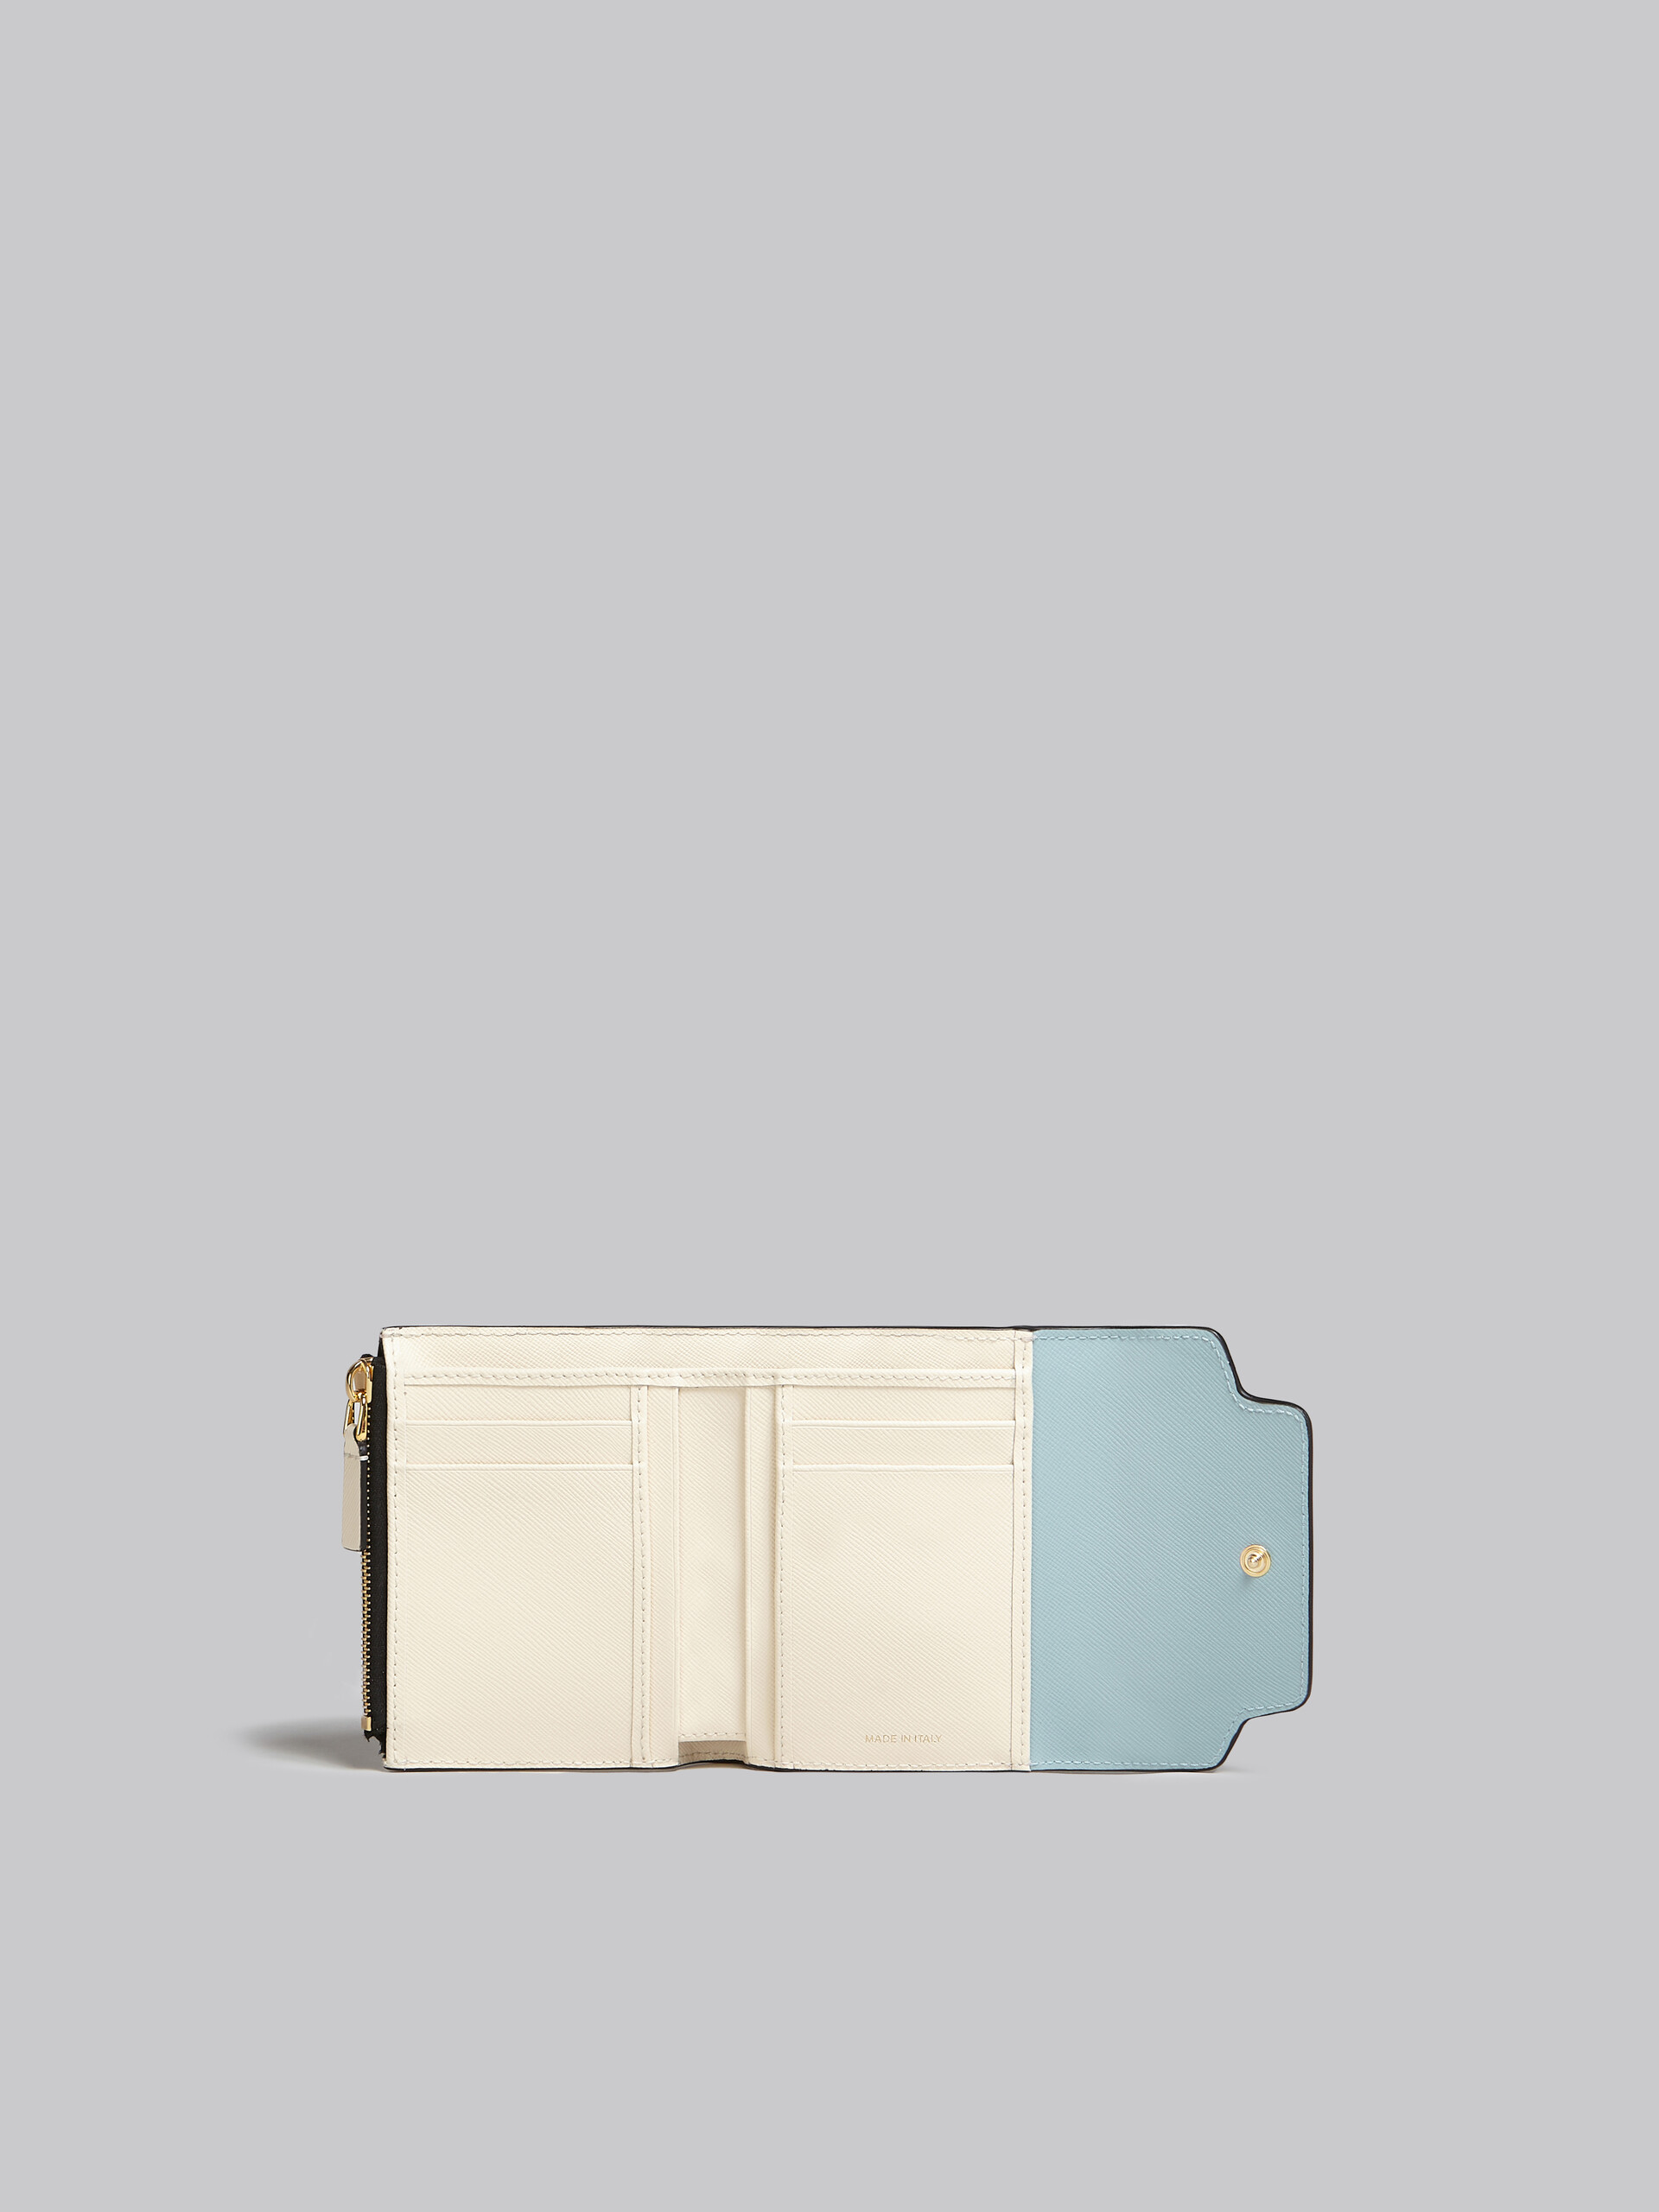 Portefeuille en cuir saffiano vert clair, blanc et marron - Portefeuilles - Image 2